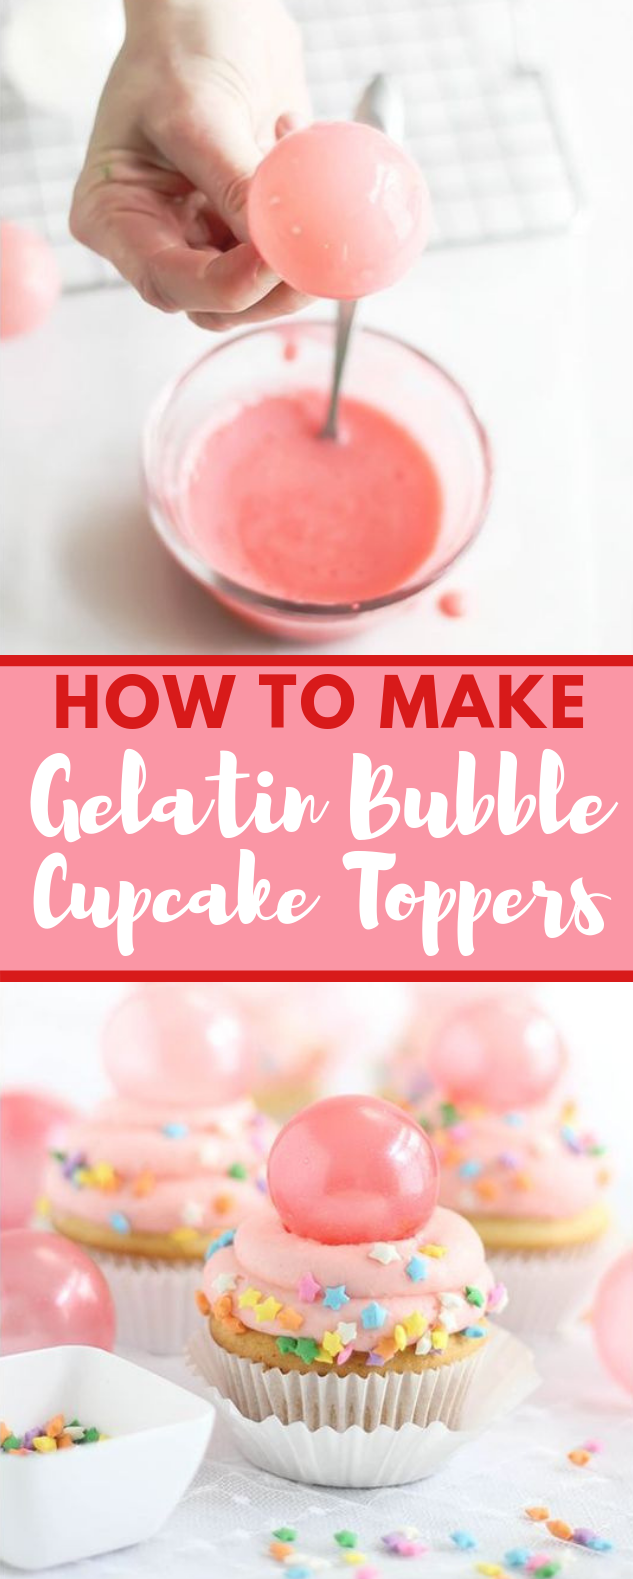 BUBBLE GUM FROSTING CUPCAKES WITH GELATIN BUBBLES #dessert #bubblegum